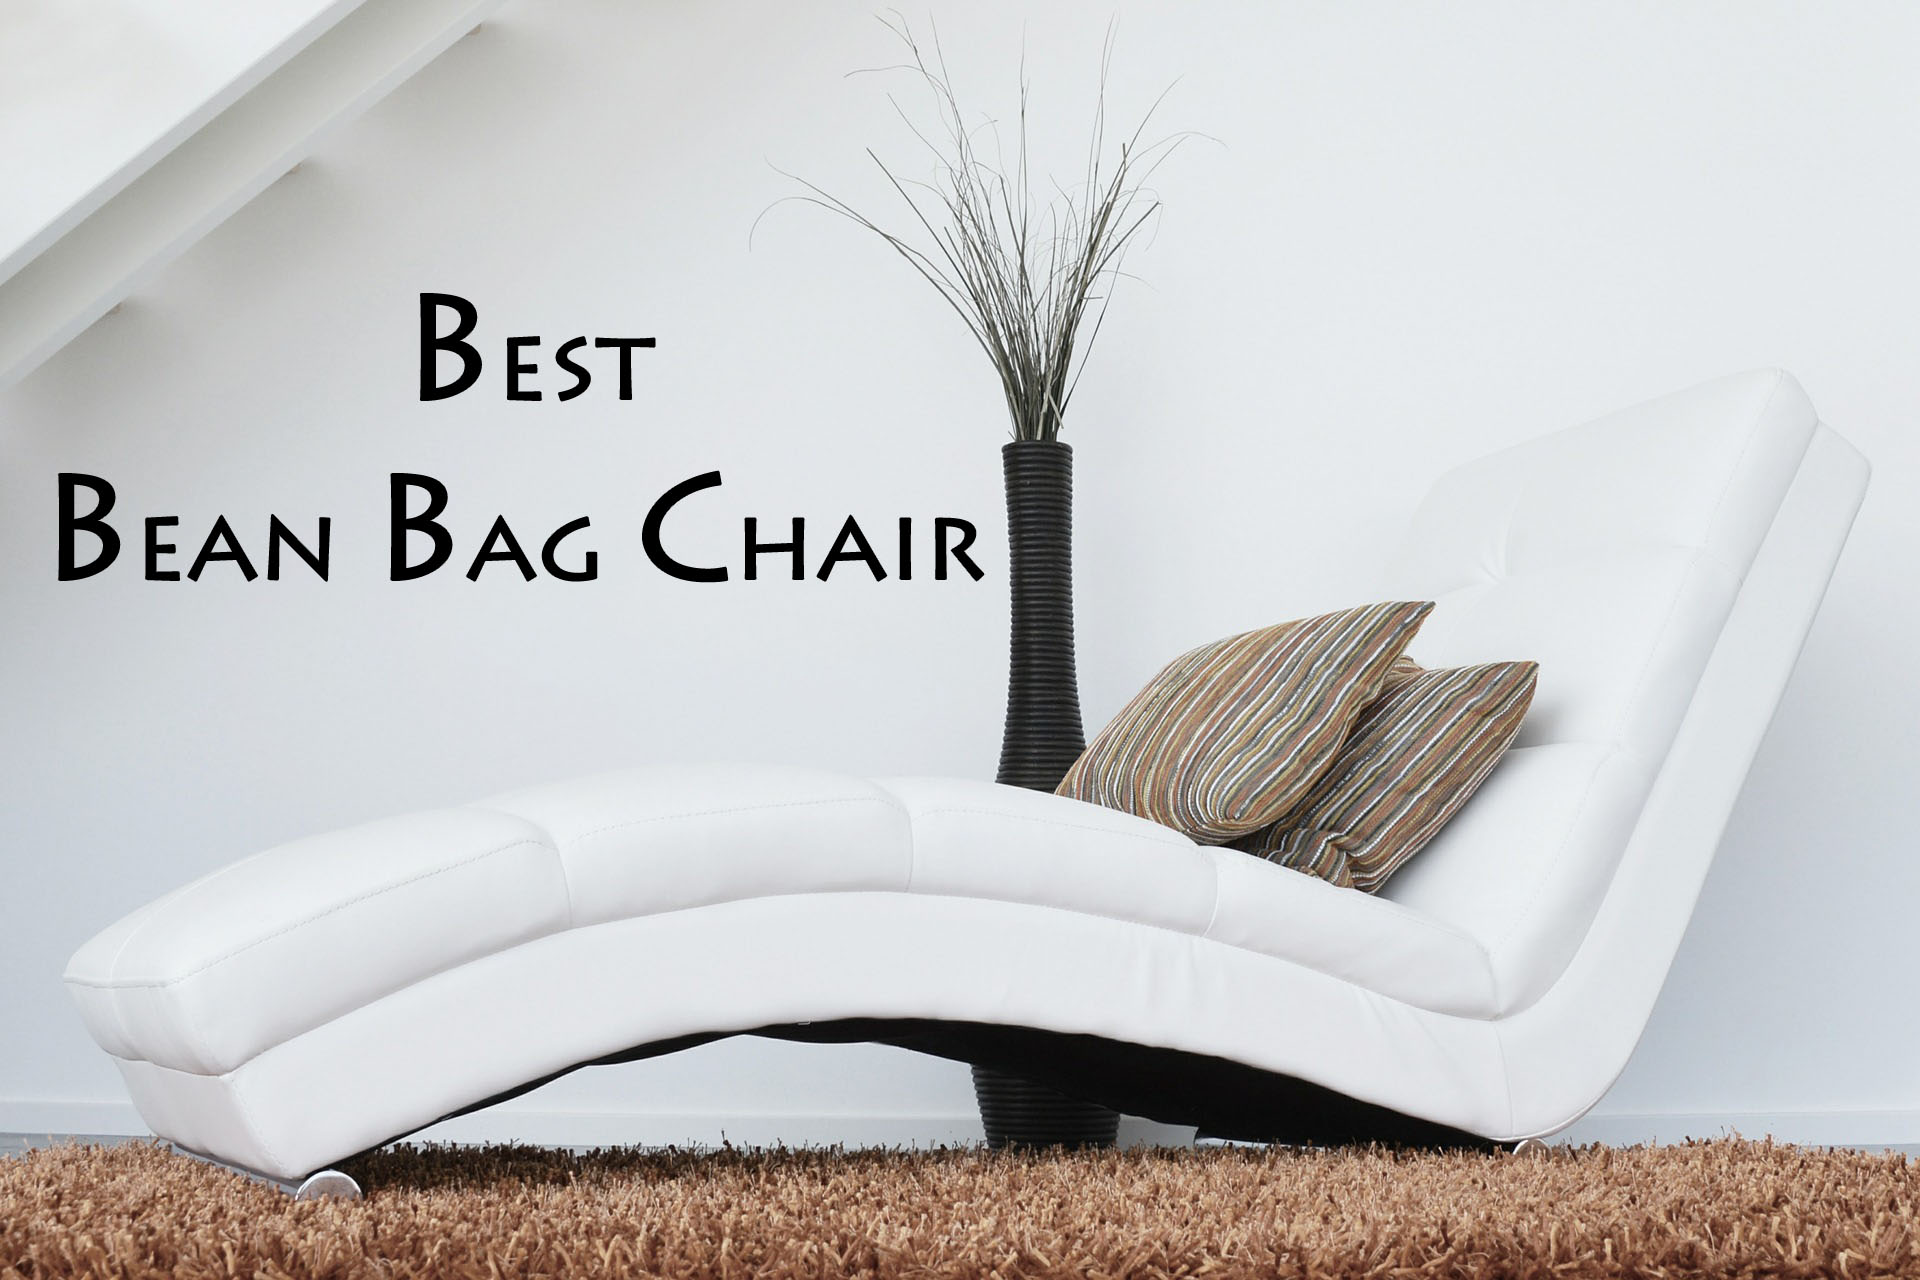 Best Bean Bag Chair